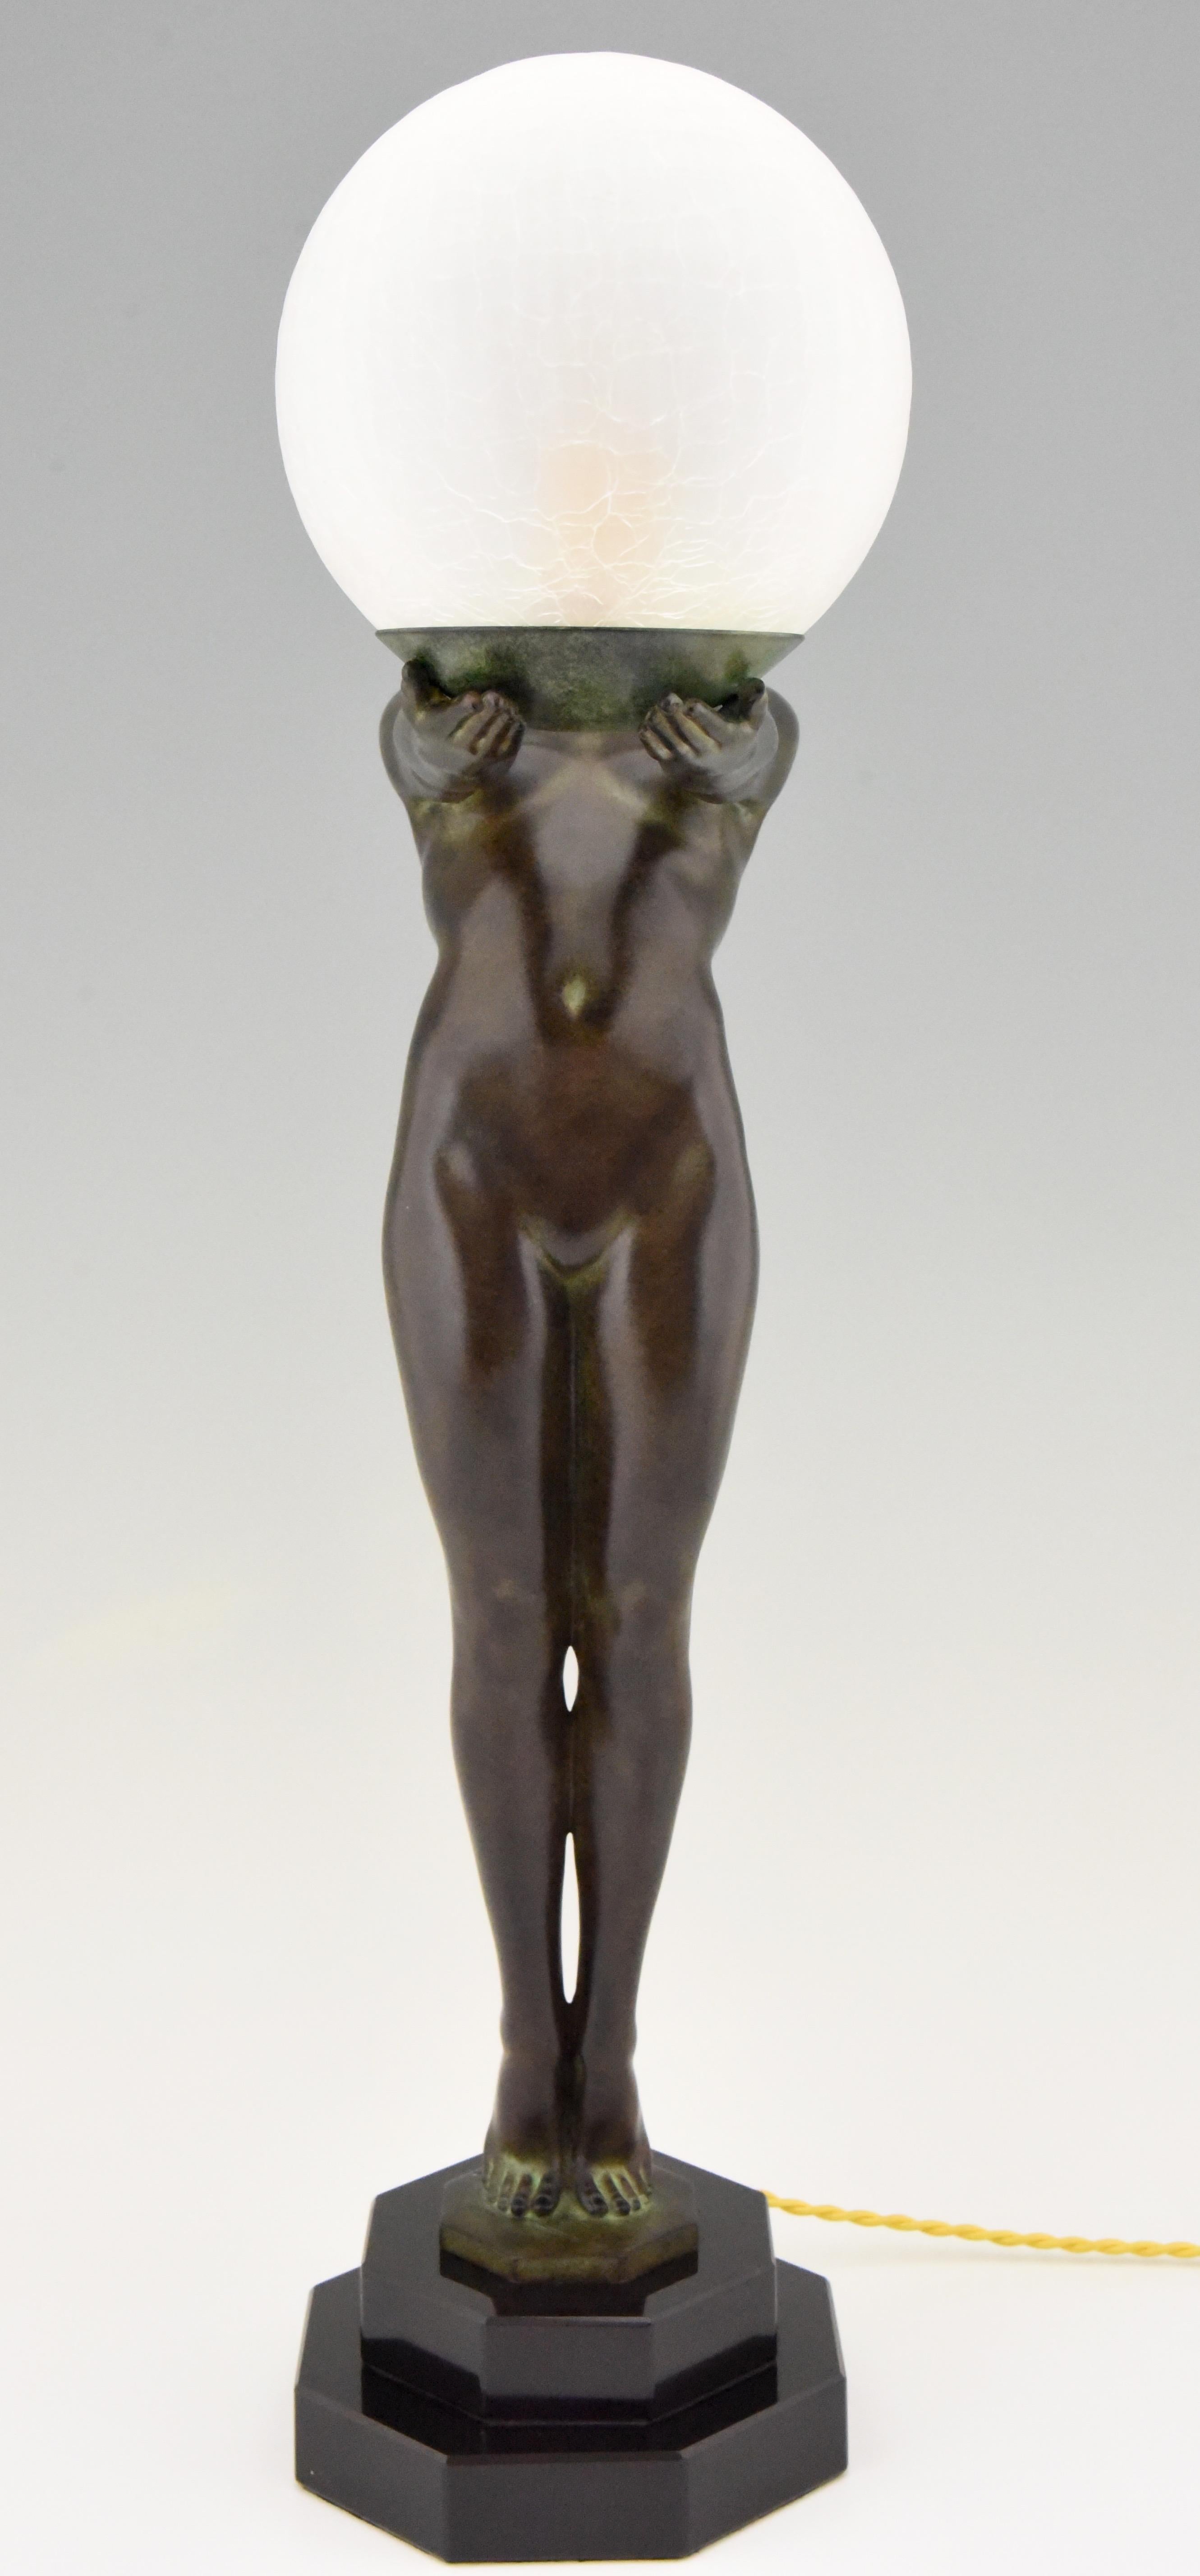 Art Deco Stil Lampe Clarté Stehender Akt Skulptur Max Le Verrier H 25 in, 64 cm (Französisch)